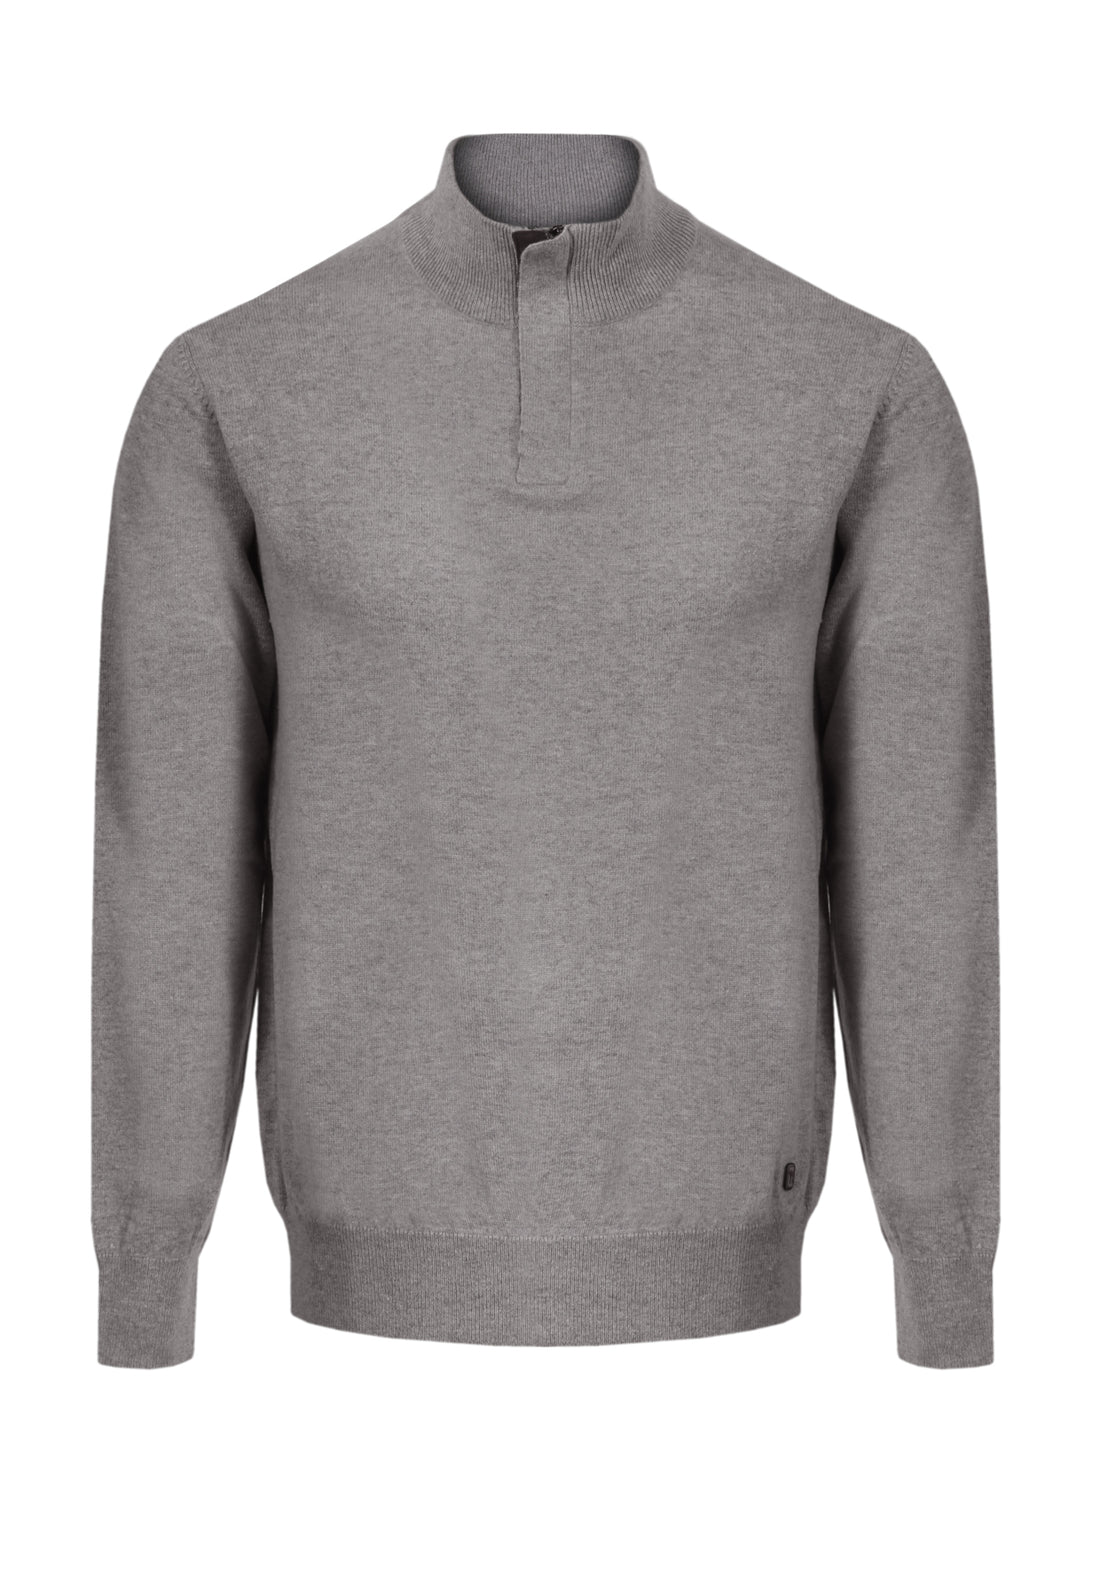 Contrast suede - dove gray zip closure sweater